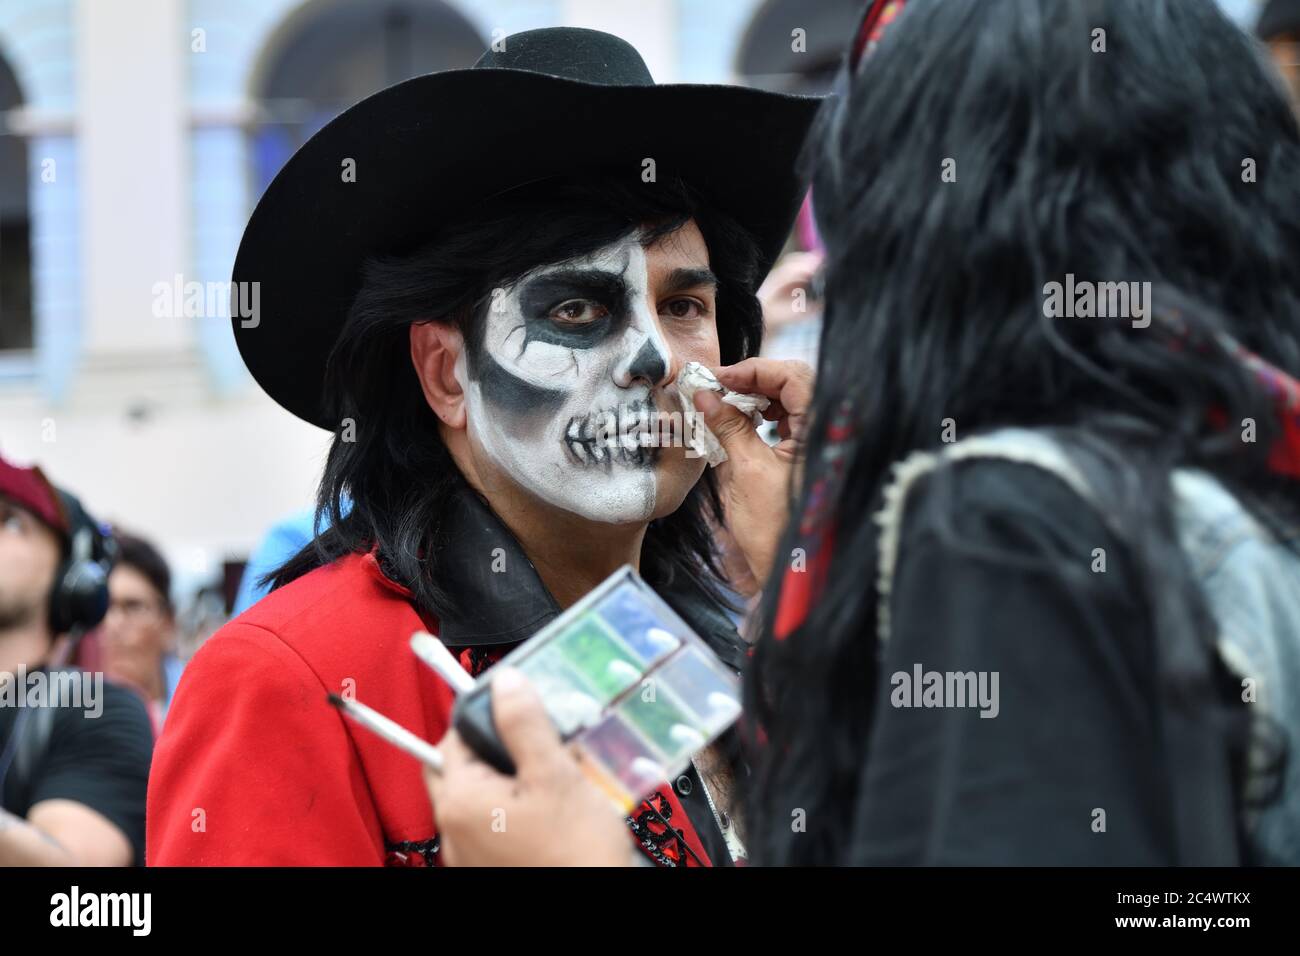 Mosca, Russia - 29 giugno 2018: La ragazza partecipante fa il trucco del  cranio di zucchero sul viso di un uomo durante il carnevale messicano di dia  de los Muertos. Giorno del